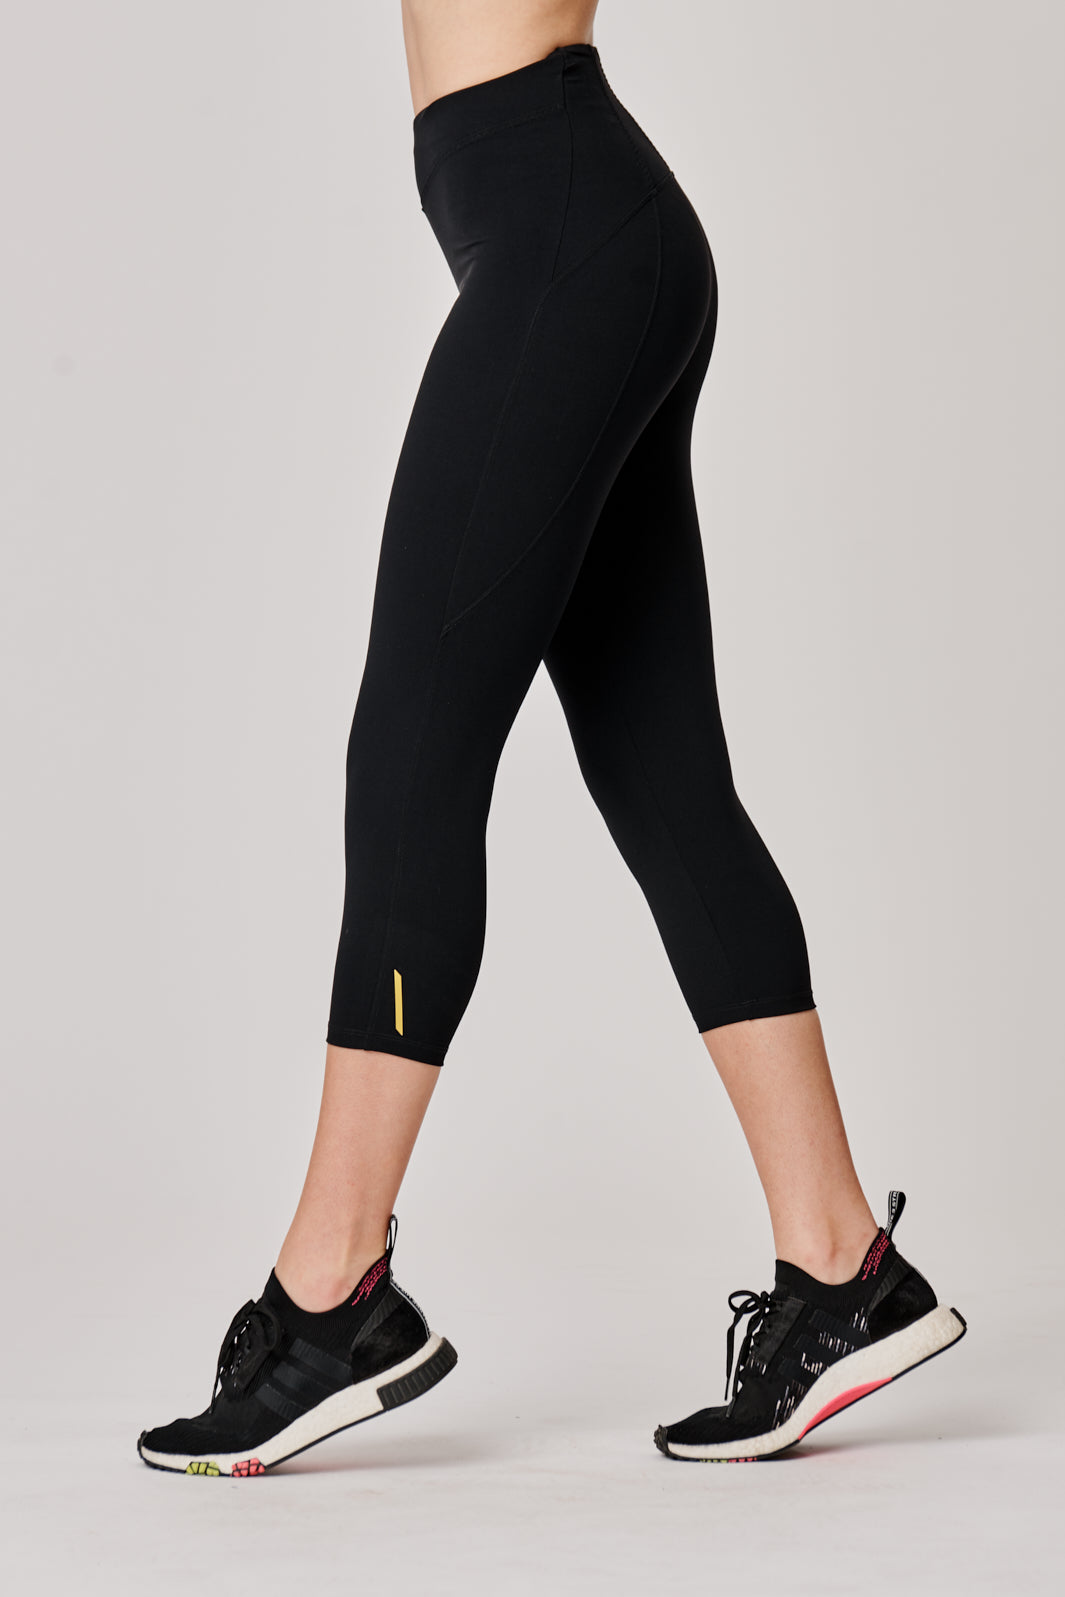 Cool classic black capri leggings high waist in 4 way stretch